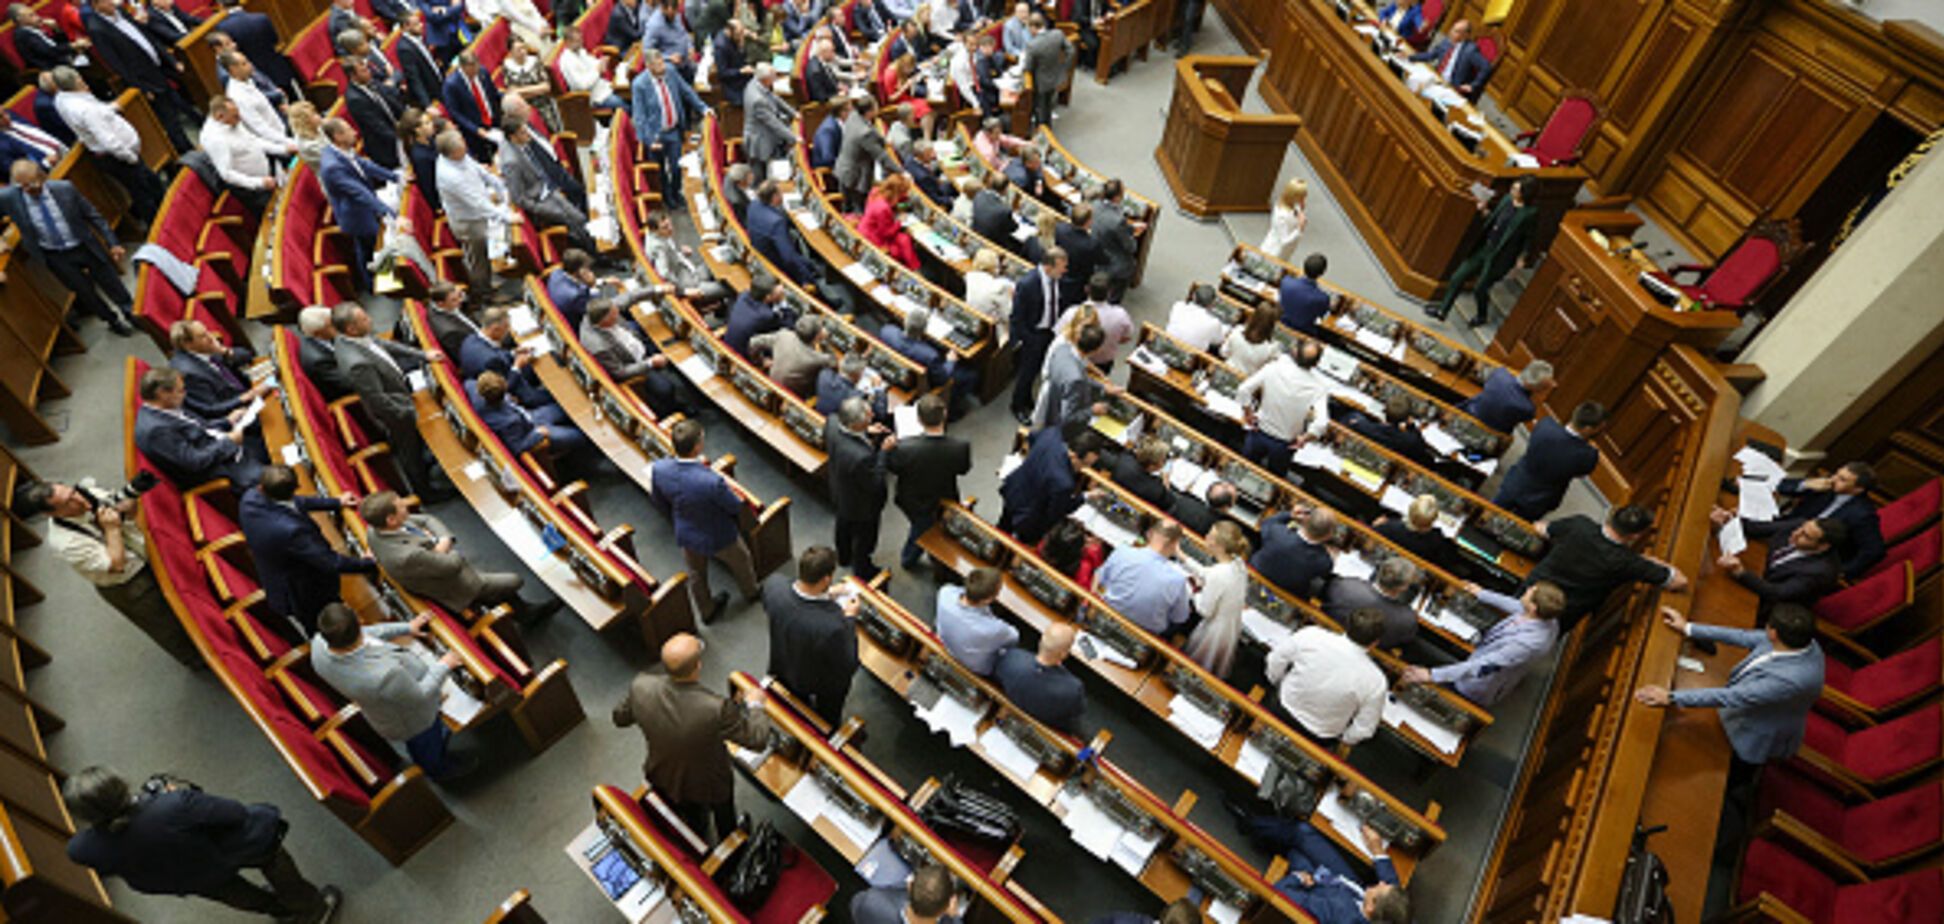 Єврономери, вибори та ЦВК: що можуть змінити в Україні вже восени